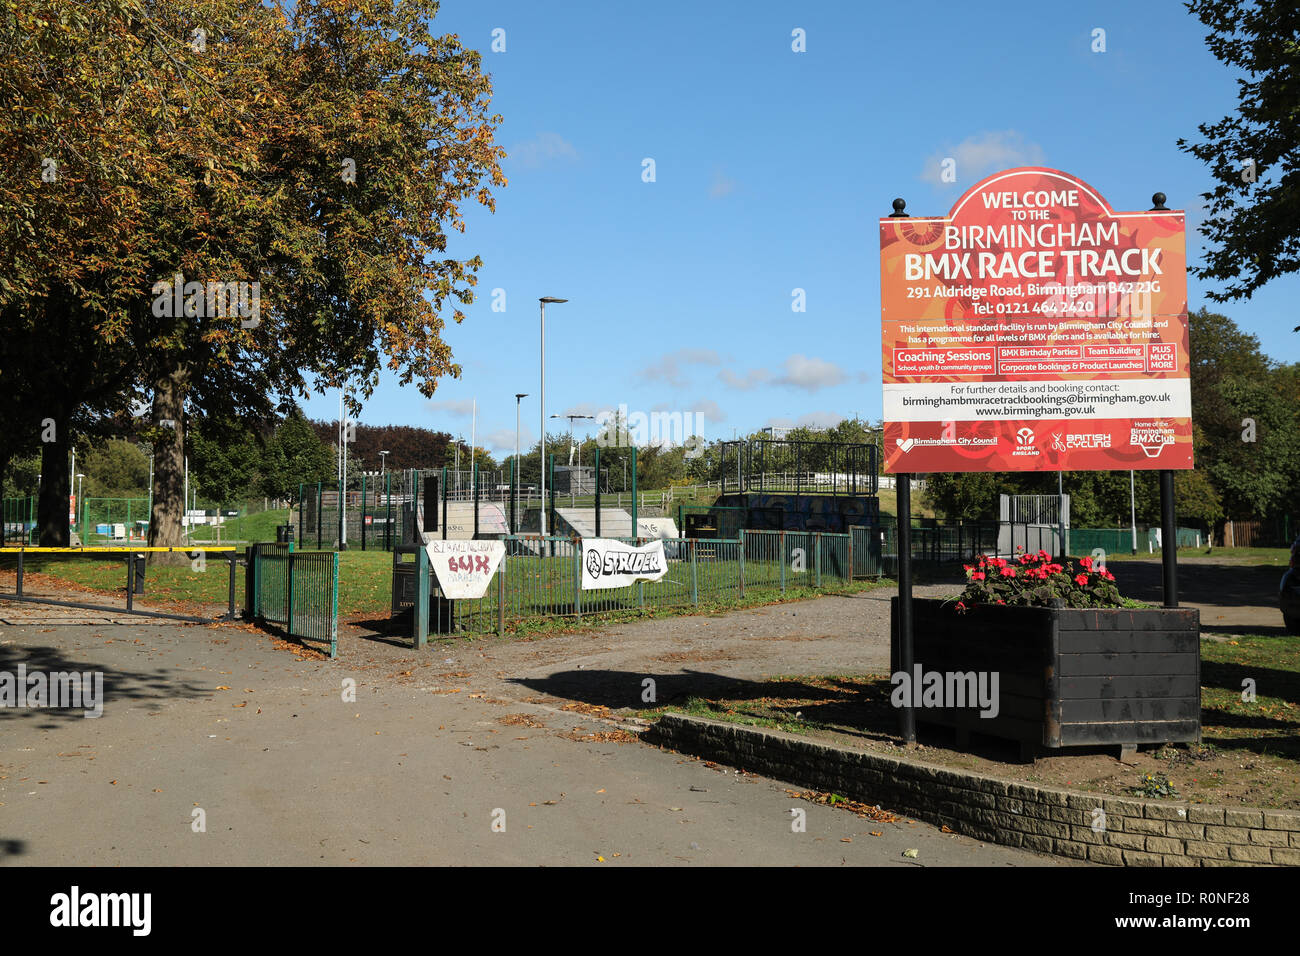 L'ingresso al Birmingham BMX Race Track, situato nella città di Birmingham, Inghilterra, Regno Unito. Foto Stock